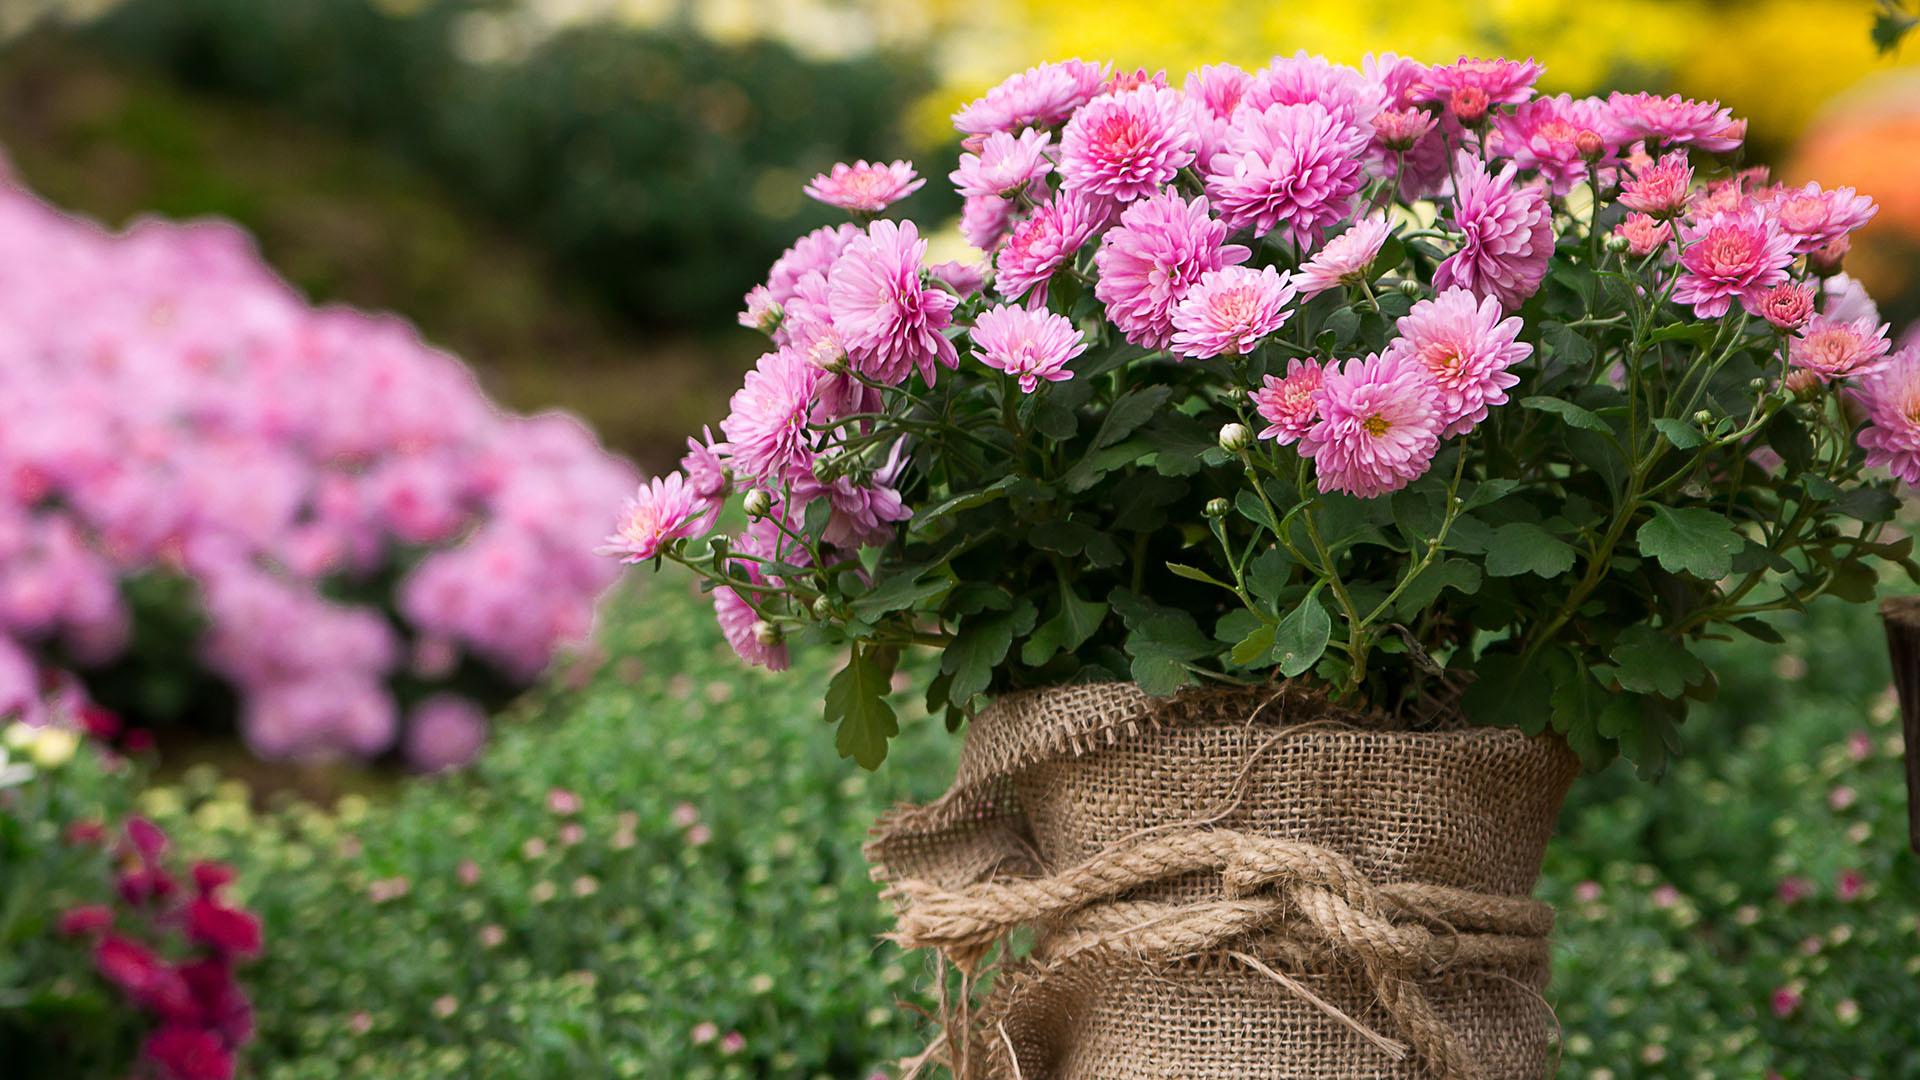 Pallokrysanteemi (Chrysanthemum) viihtyy parhaiten aurinkoisella paikalla. Värivalikoima on laaja: valkoisia, keltaisia, oransseja, vaaleanpunaisia ja violetteja kukkia. Pallokrysanteemi kukkii pitkälle syksyyn, kunhan huolehditaan tasaisesta kosteudesta, muistetaan lannoitus ja nypitään kukkineet kukat pois. Kukat ränsistyvät helposti kastuessaan, joten krysanteemi kukkii parhaiten sateelta suojassa, esim. parvekkeella tai terassilla. (Kuva: Shutterstock)